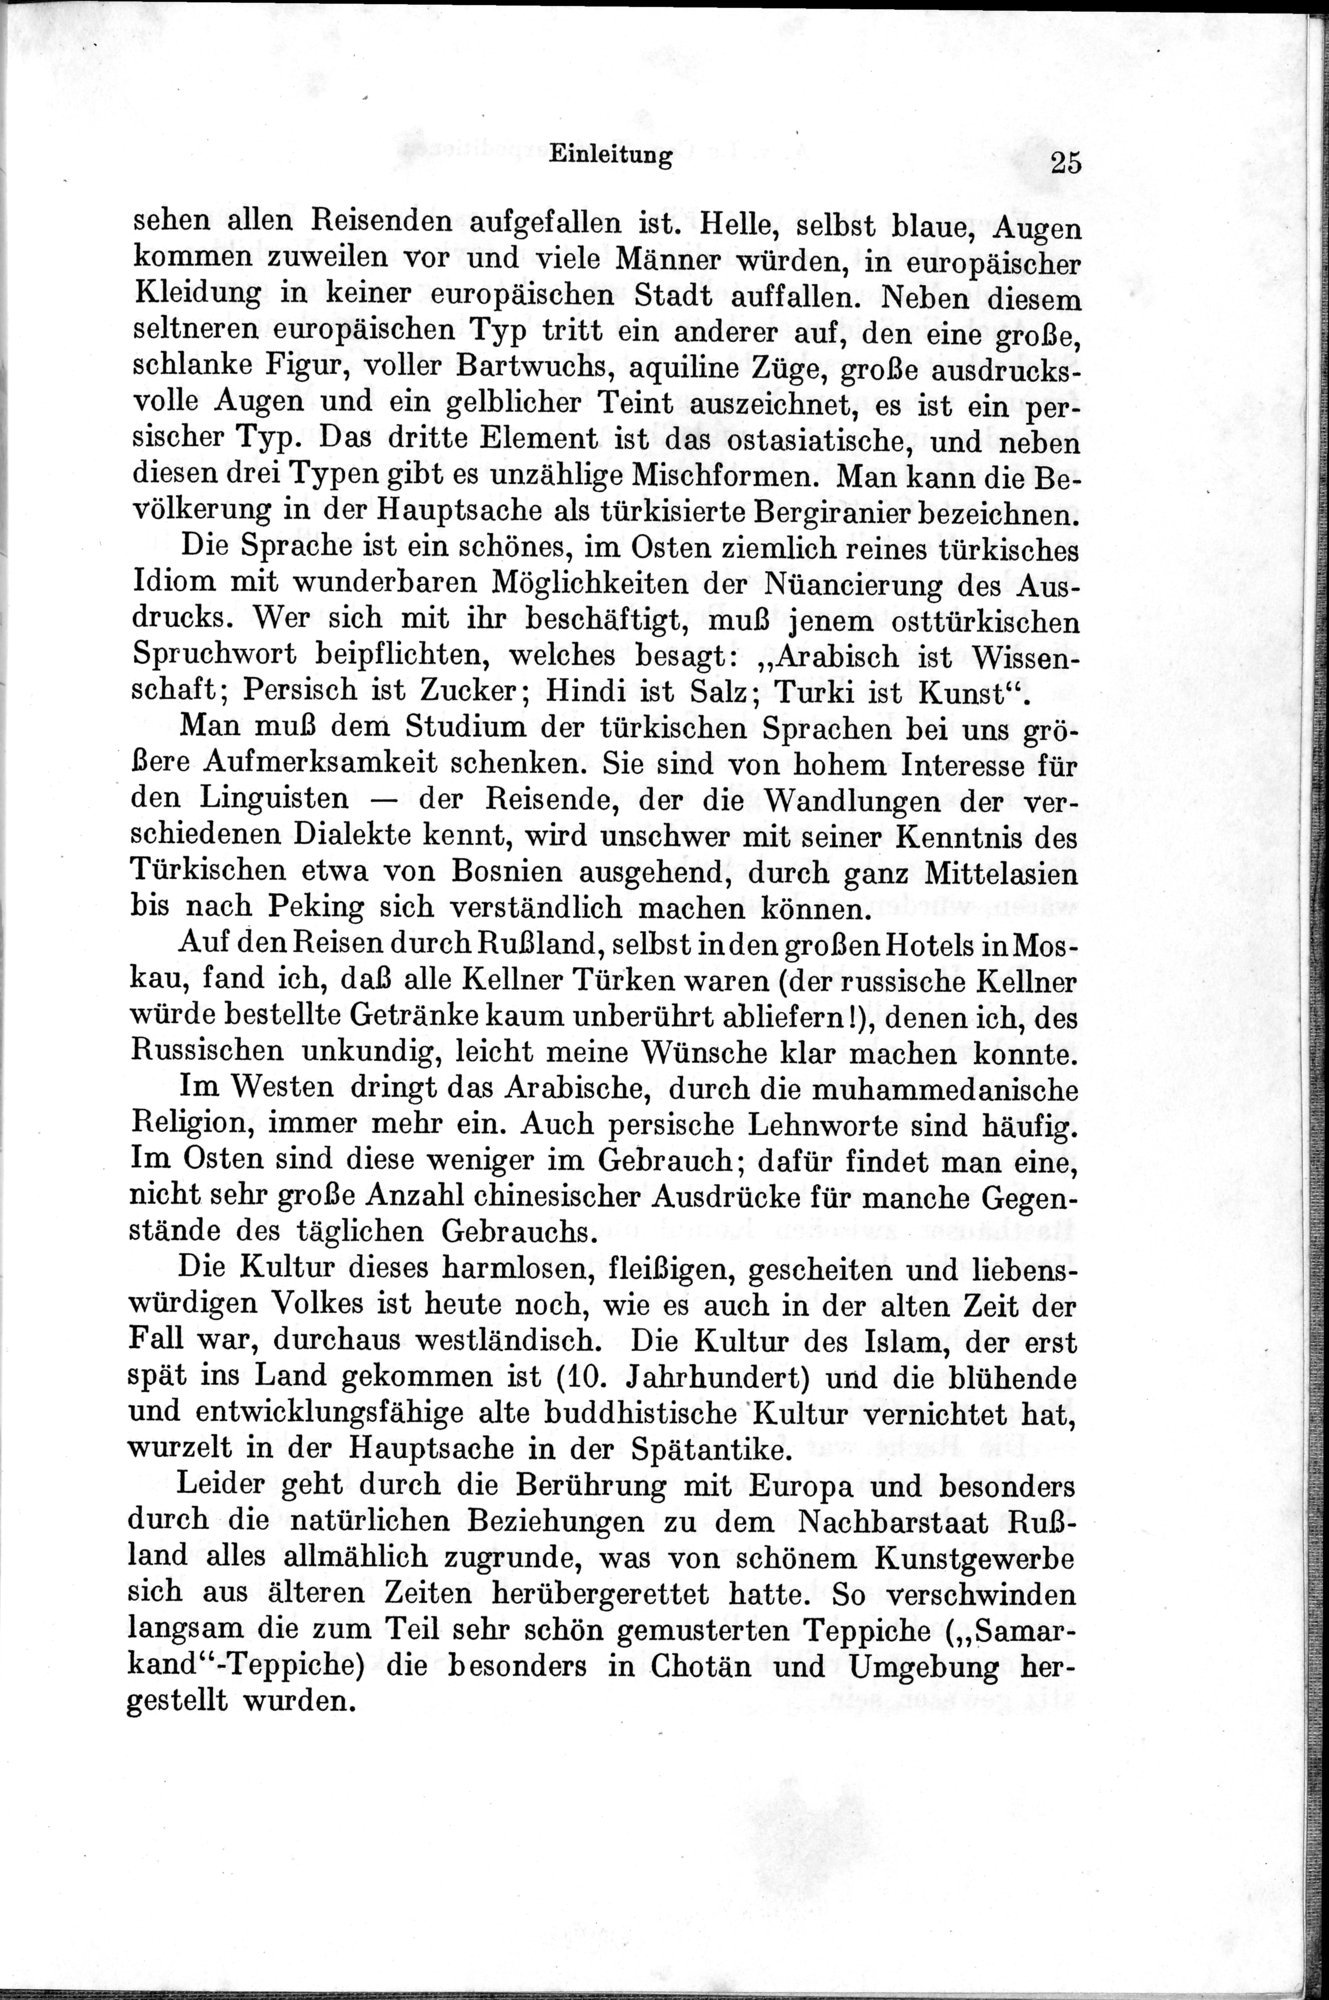 Auf Hellas Spuren in Ostturkistan : vol.1 / Page 45 (Grayscale High Resolution Image)